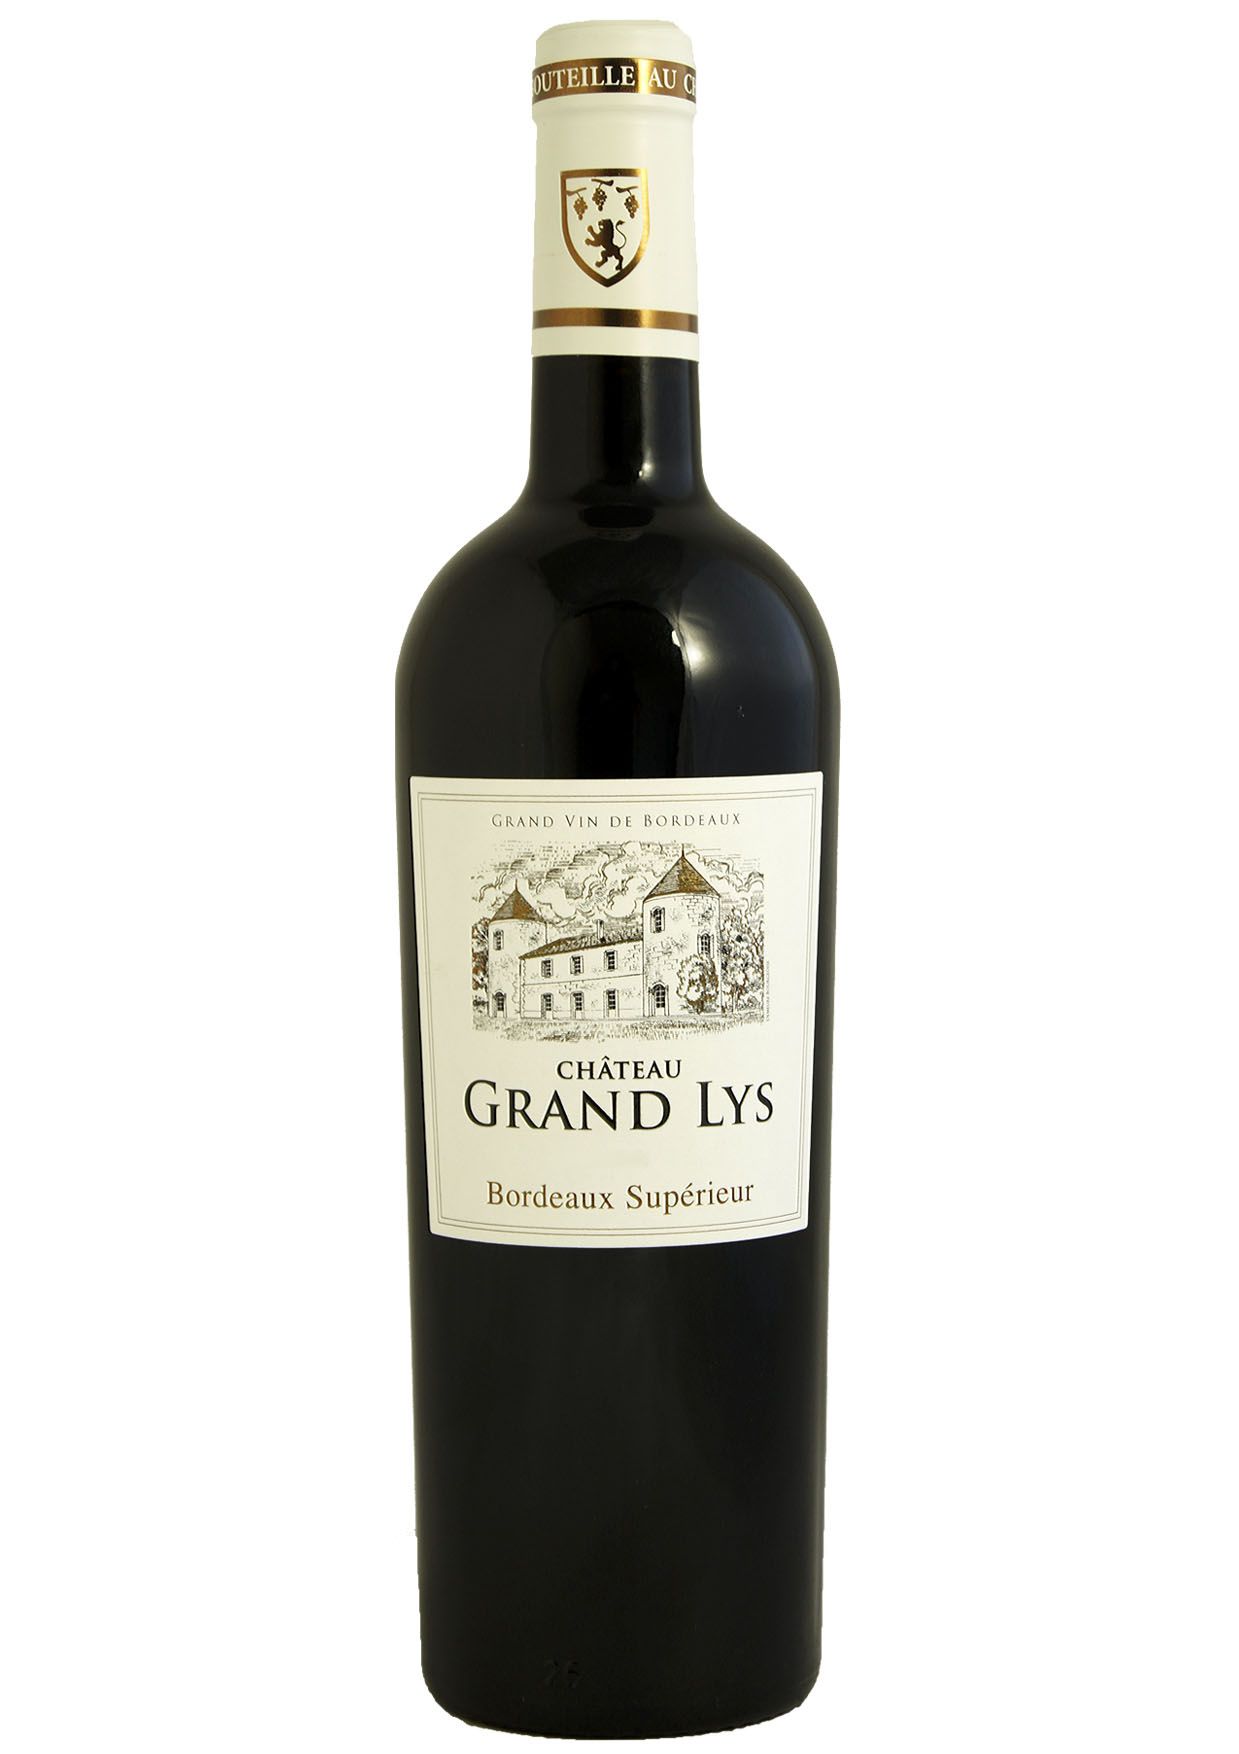 Vinho Chateau Grand Lys Bordeaux Supérieur 2016